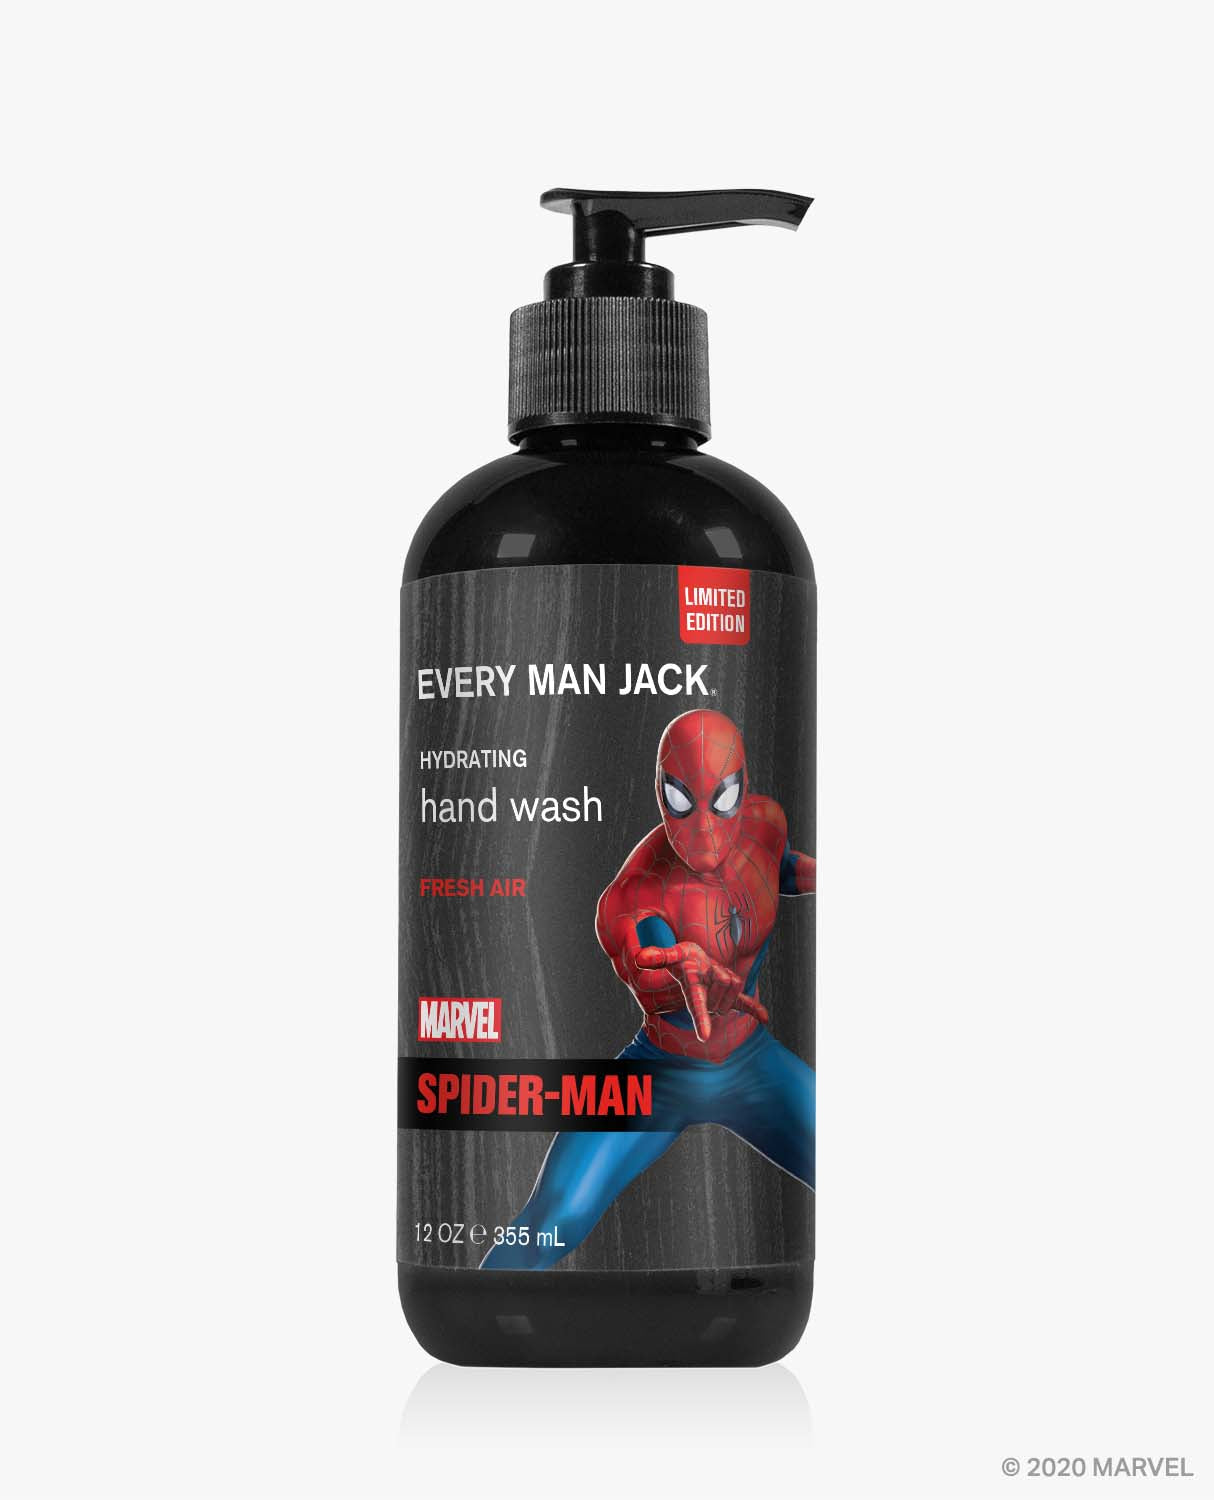 Spider-Man / Standard (7346570100898)